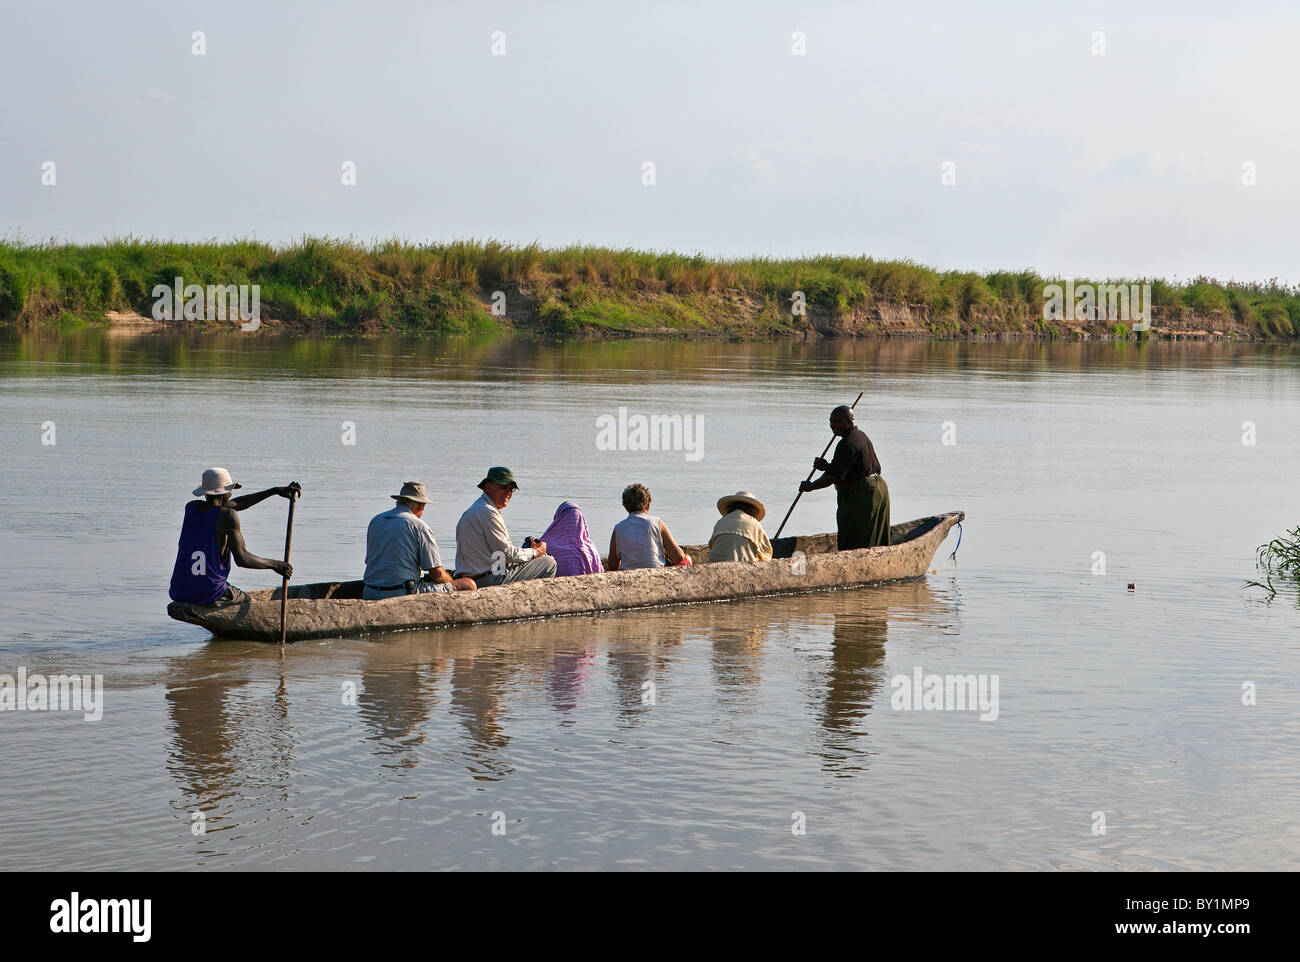 Le gite in barca e bird watching sul fiume Kilombero vicino a Ifakara. Questo fiume è un importante affluente del fiume Rufiji. Foto Stock